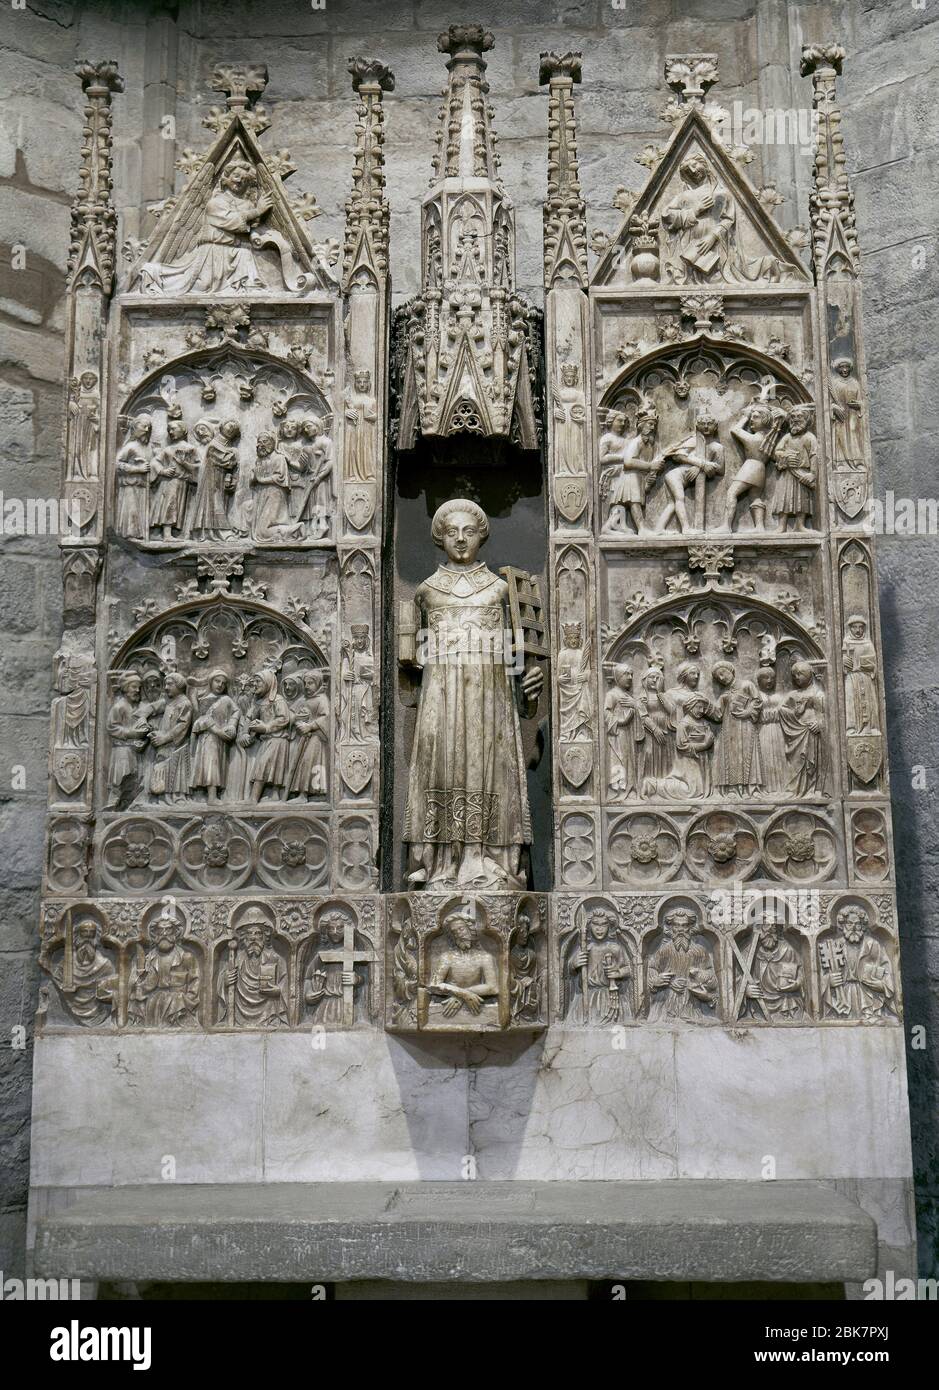 Pala di San Lorenzo, costruita da Jordi de Deu tra il 1386 e il 1387, in stile gotico. Alabastro. Presieduta dalla figura del santo vestita come diacono, con un libro in una mano e le griglie del martirio nell'altra. La vita del Santo (parte centrale), l'Annunciazione (parte superiore) e la Passione (predella inferiore) sono rappresentate. Chiesa parrocchiale di Santa Maria. Santa Coloma de Queralt, Provincia di Tarragona, Catalogna, Spagna. Foto Stock